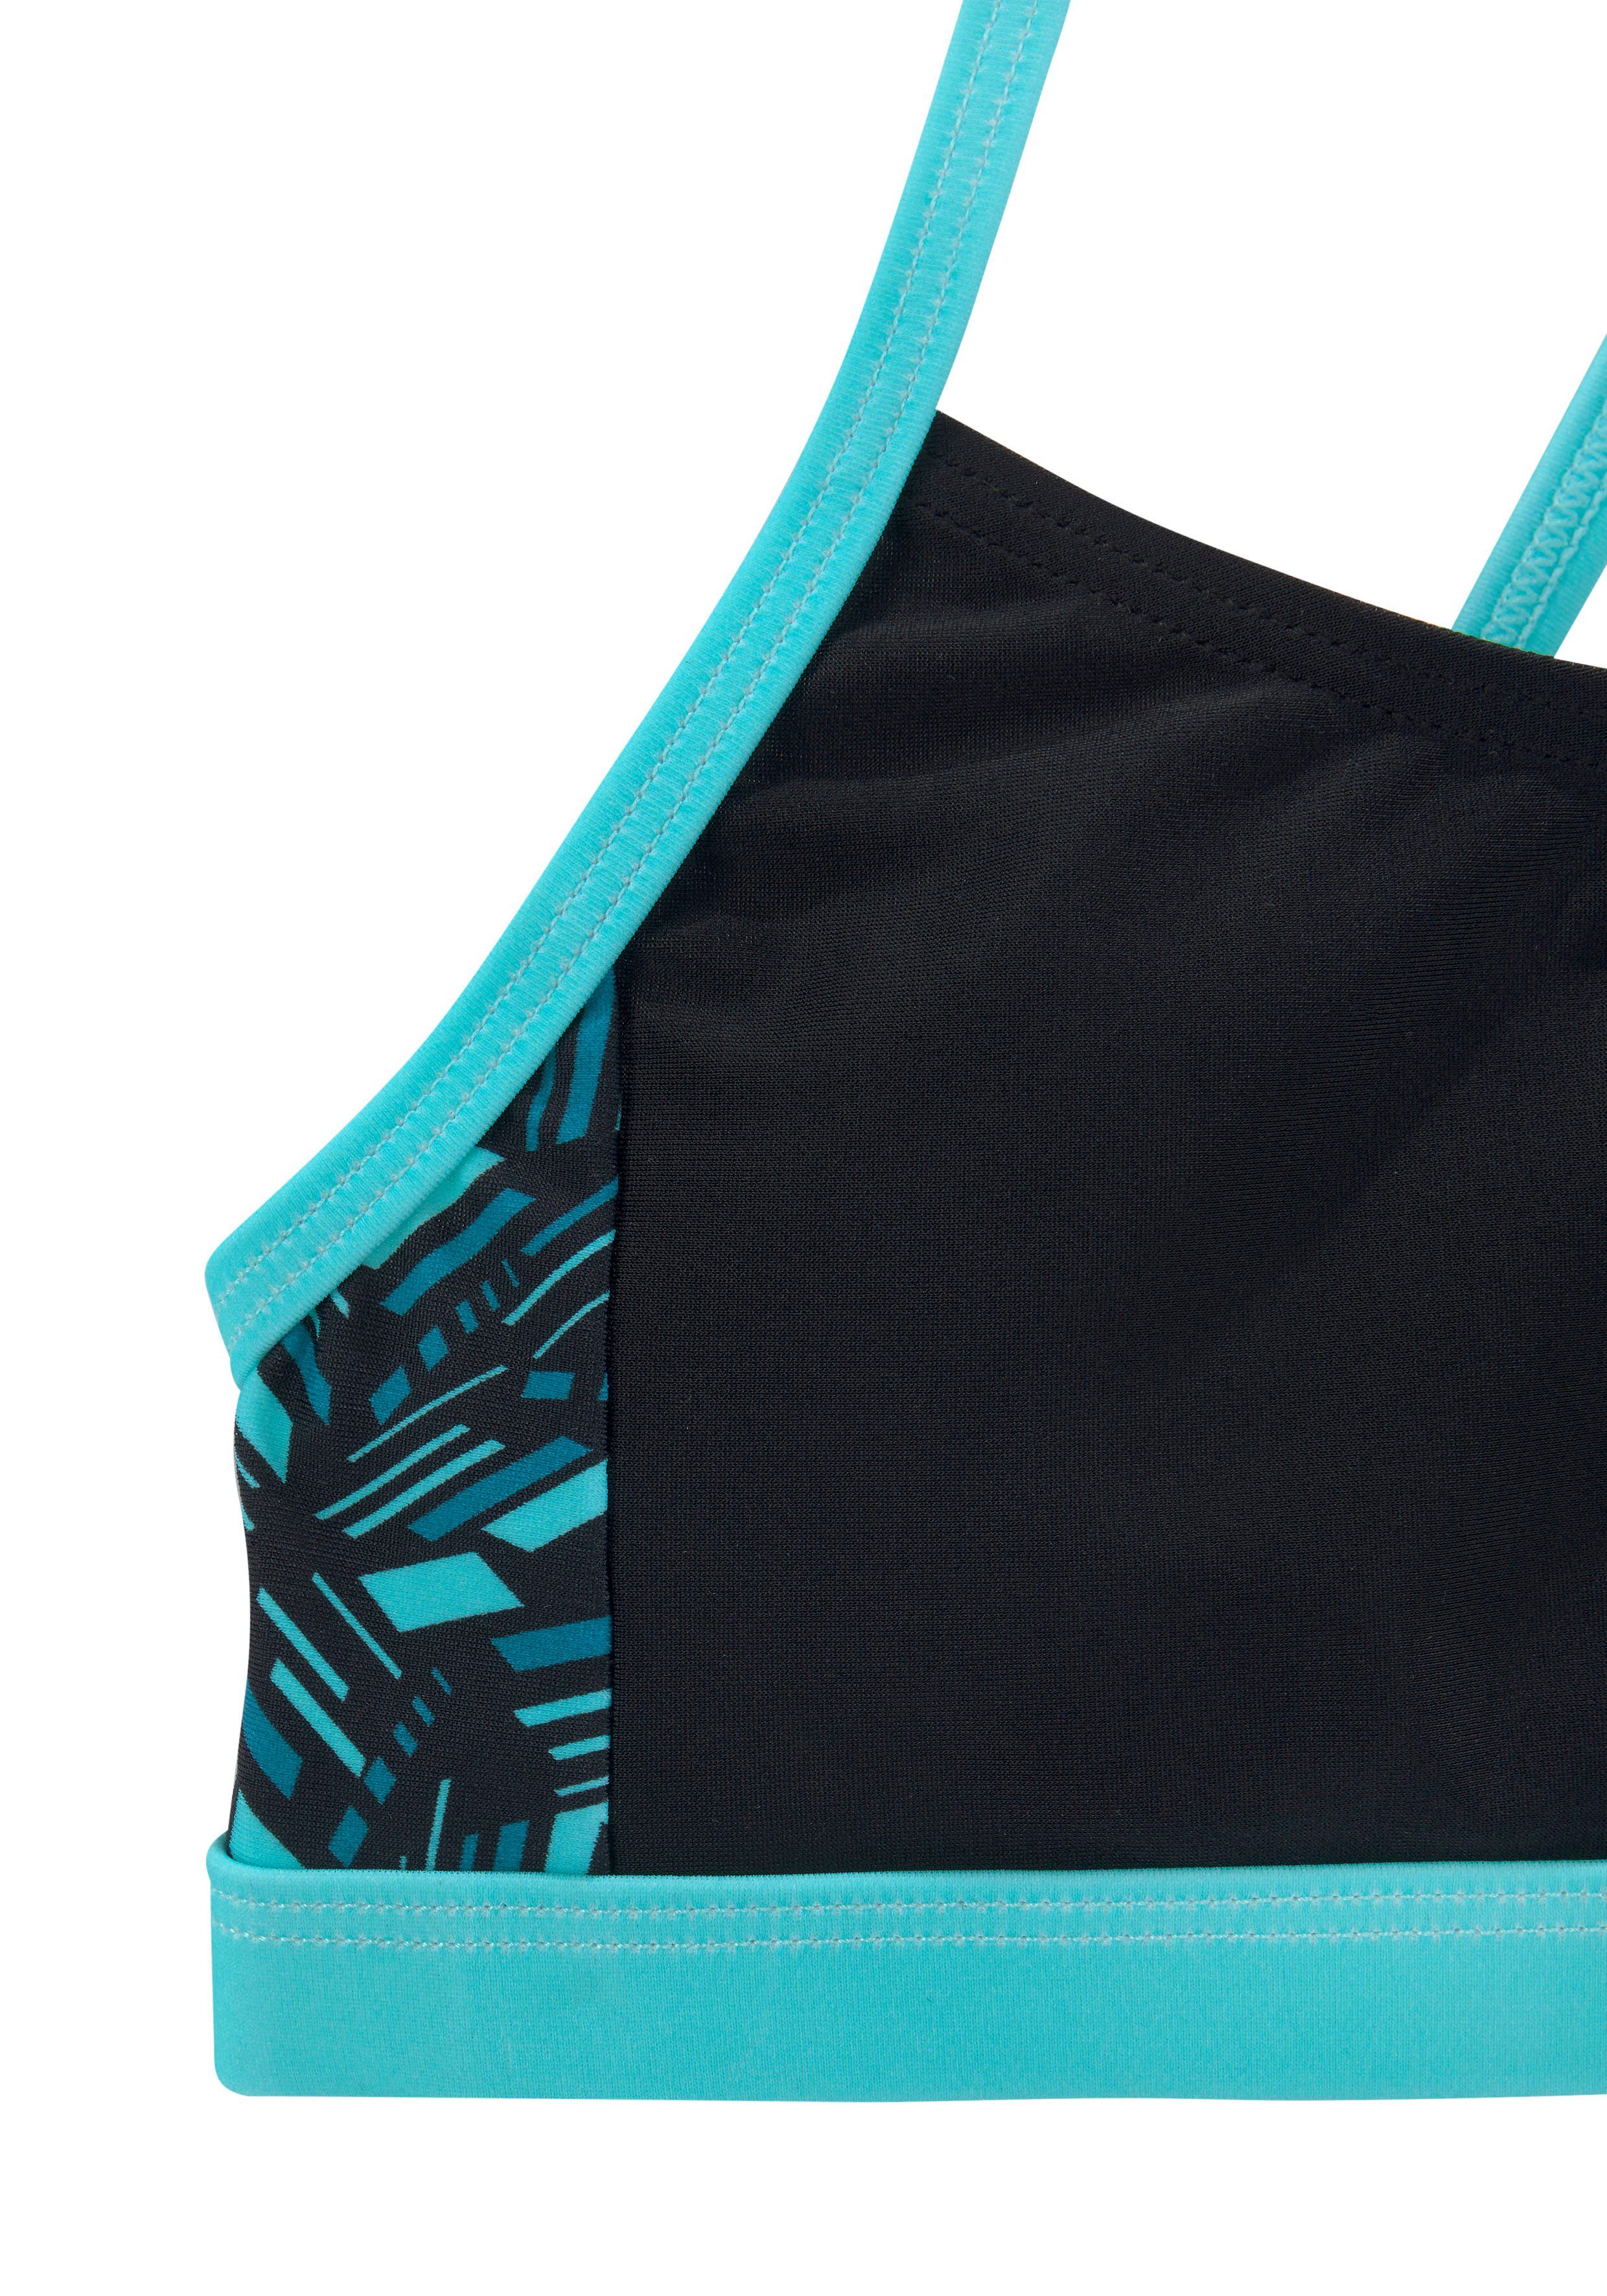 Bustier-Bikini bedruckten schwarz-blau Einsätzen geometrische Bench. mit